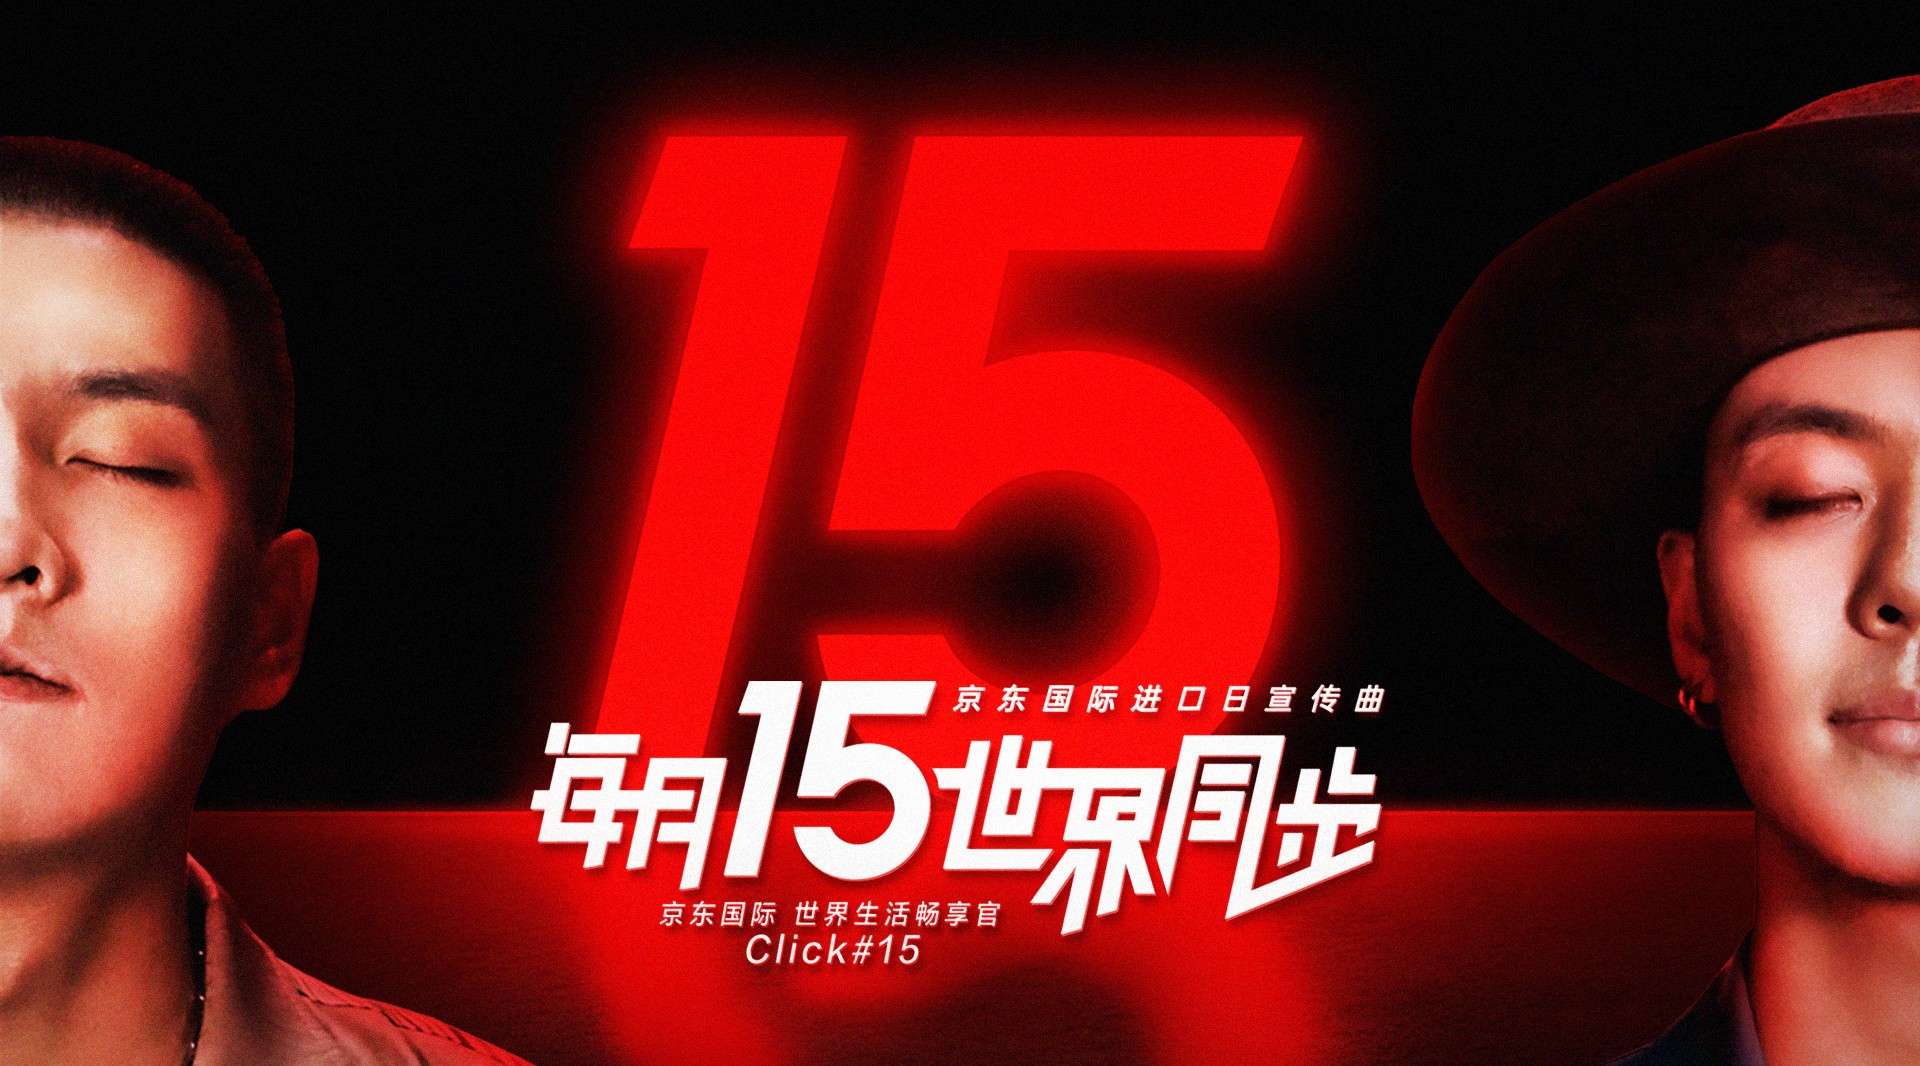 京东国际xClick#15 MV上线：每月15想把世界全部都给你